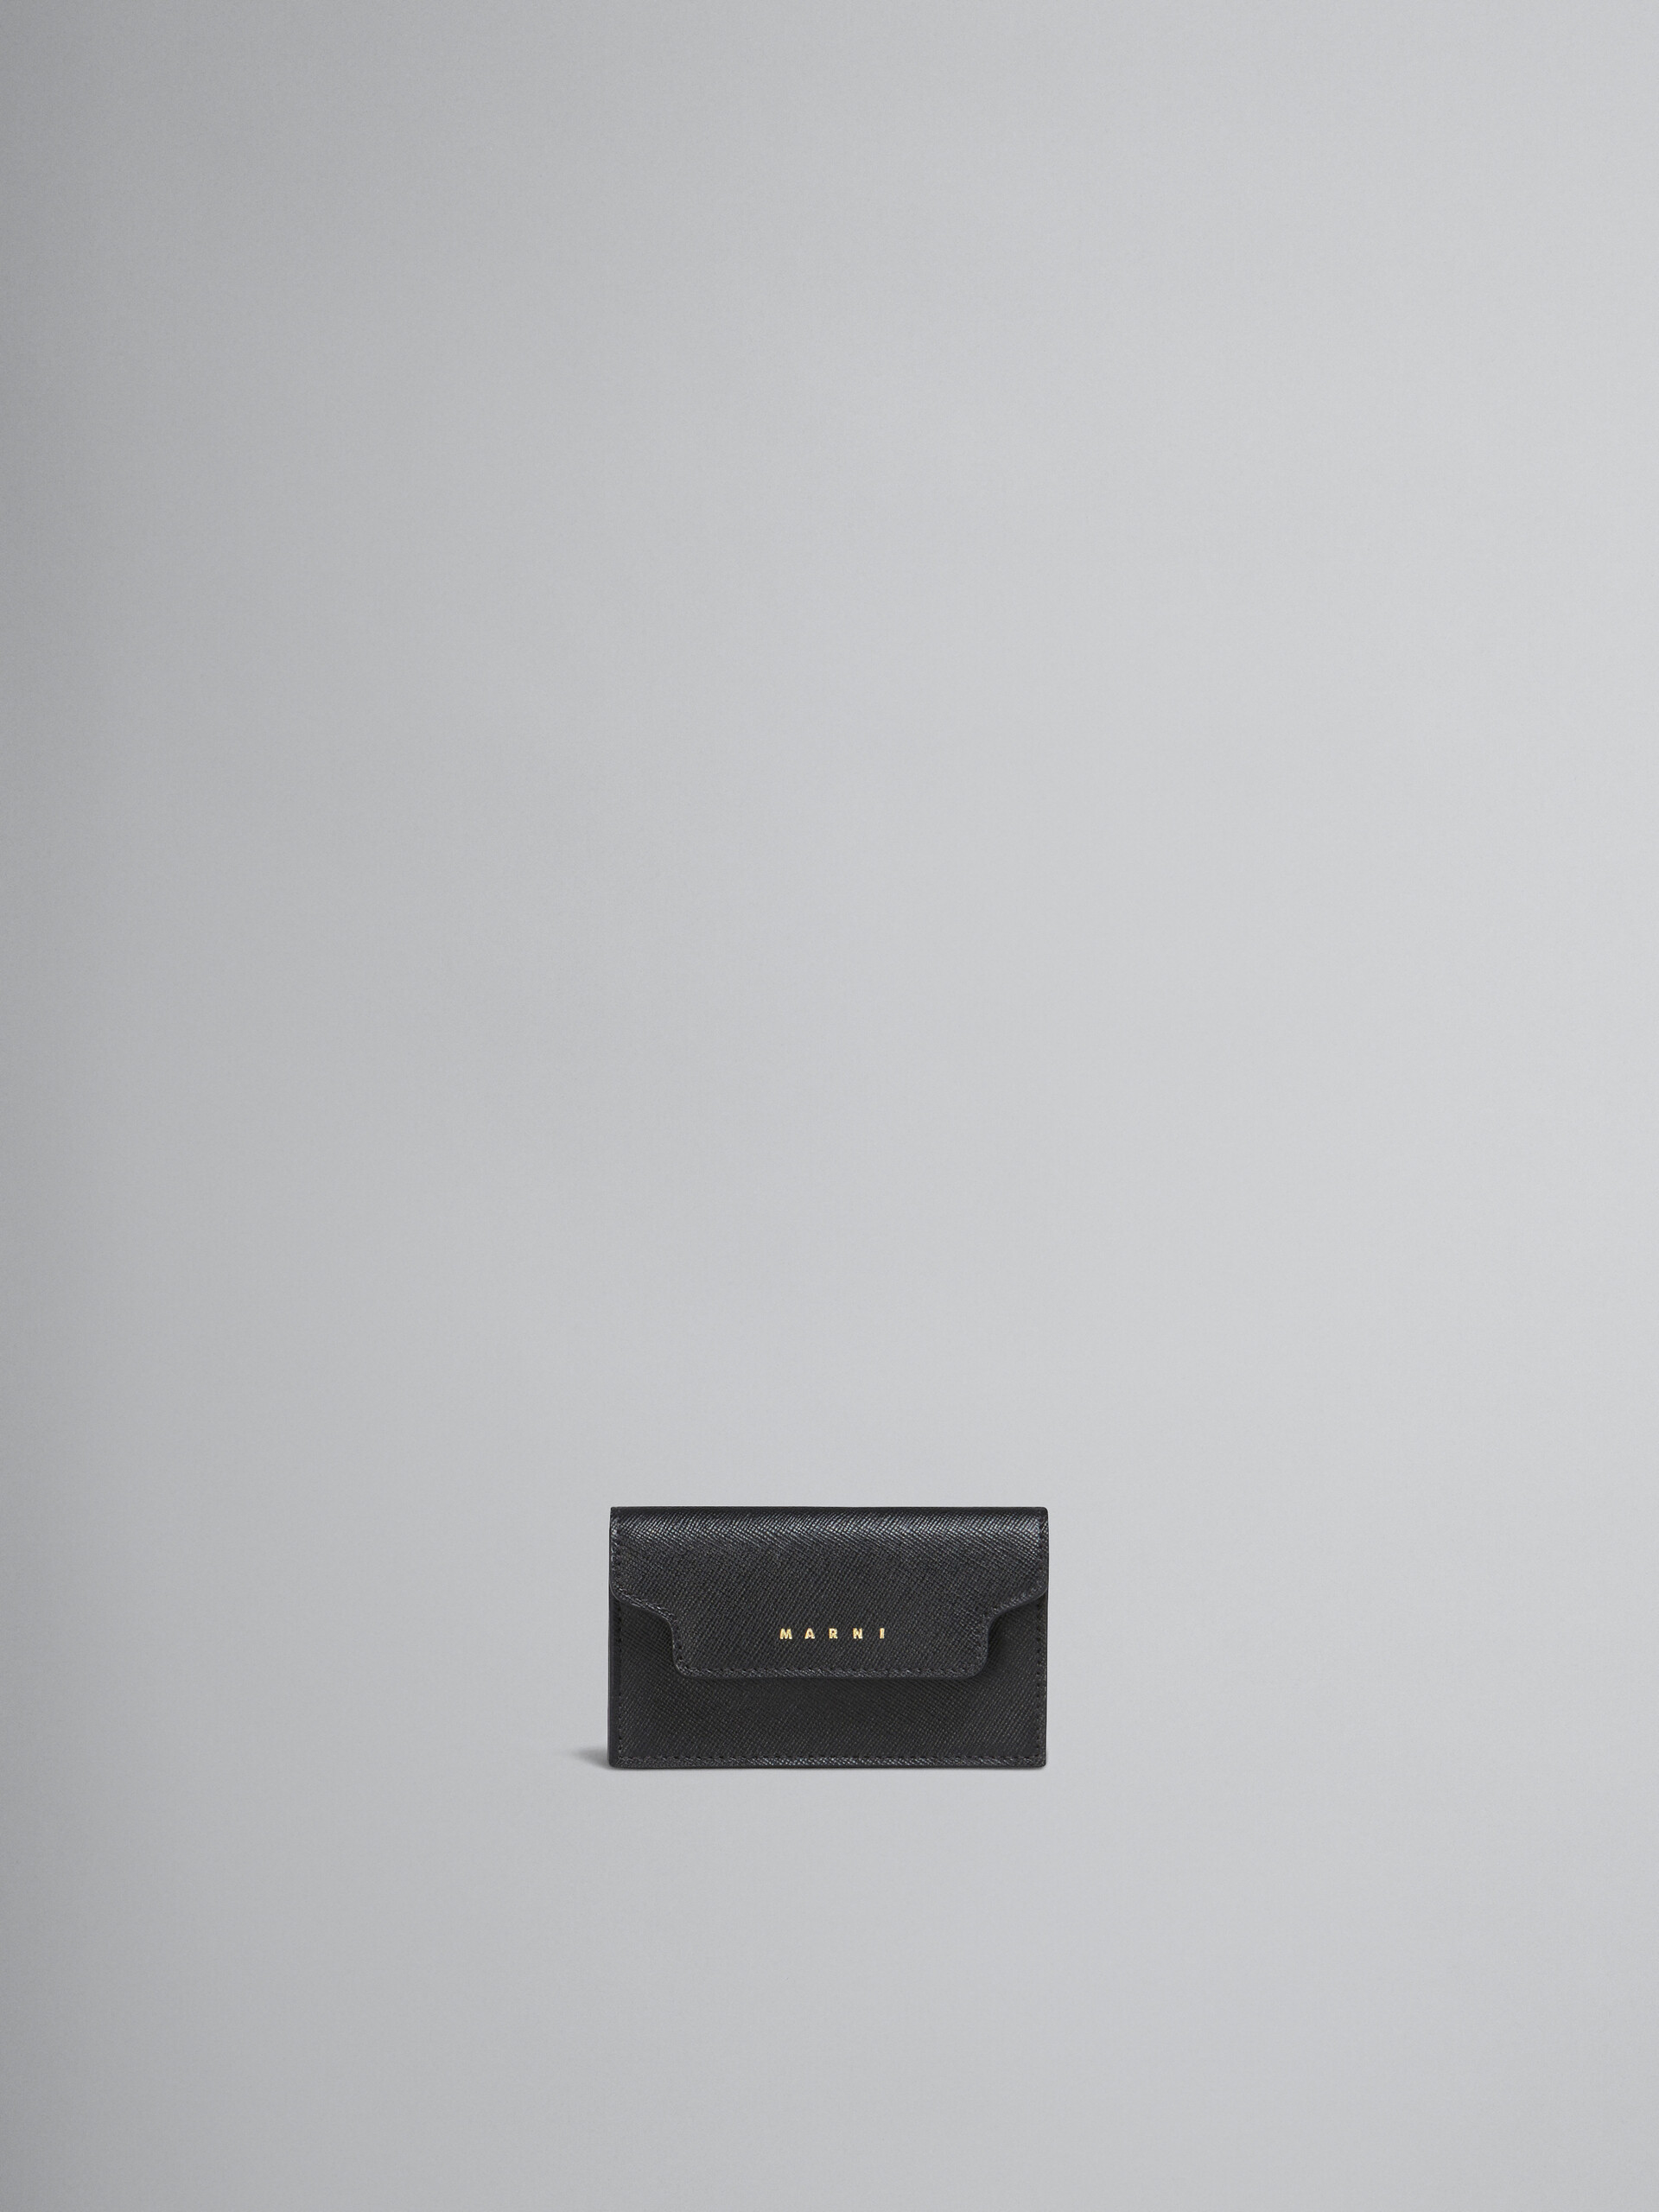 Porte-cartes de visite en cuir saffiano noir - Portefeuilles - Image 1